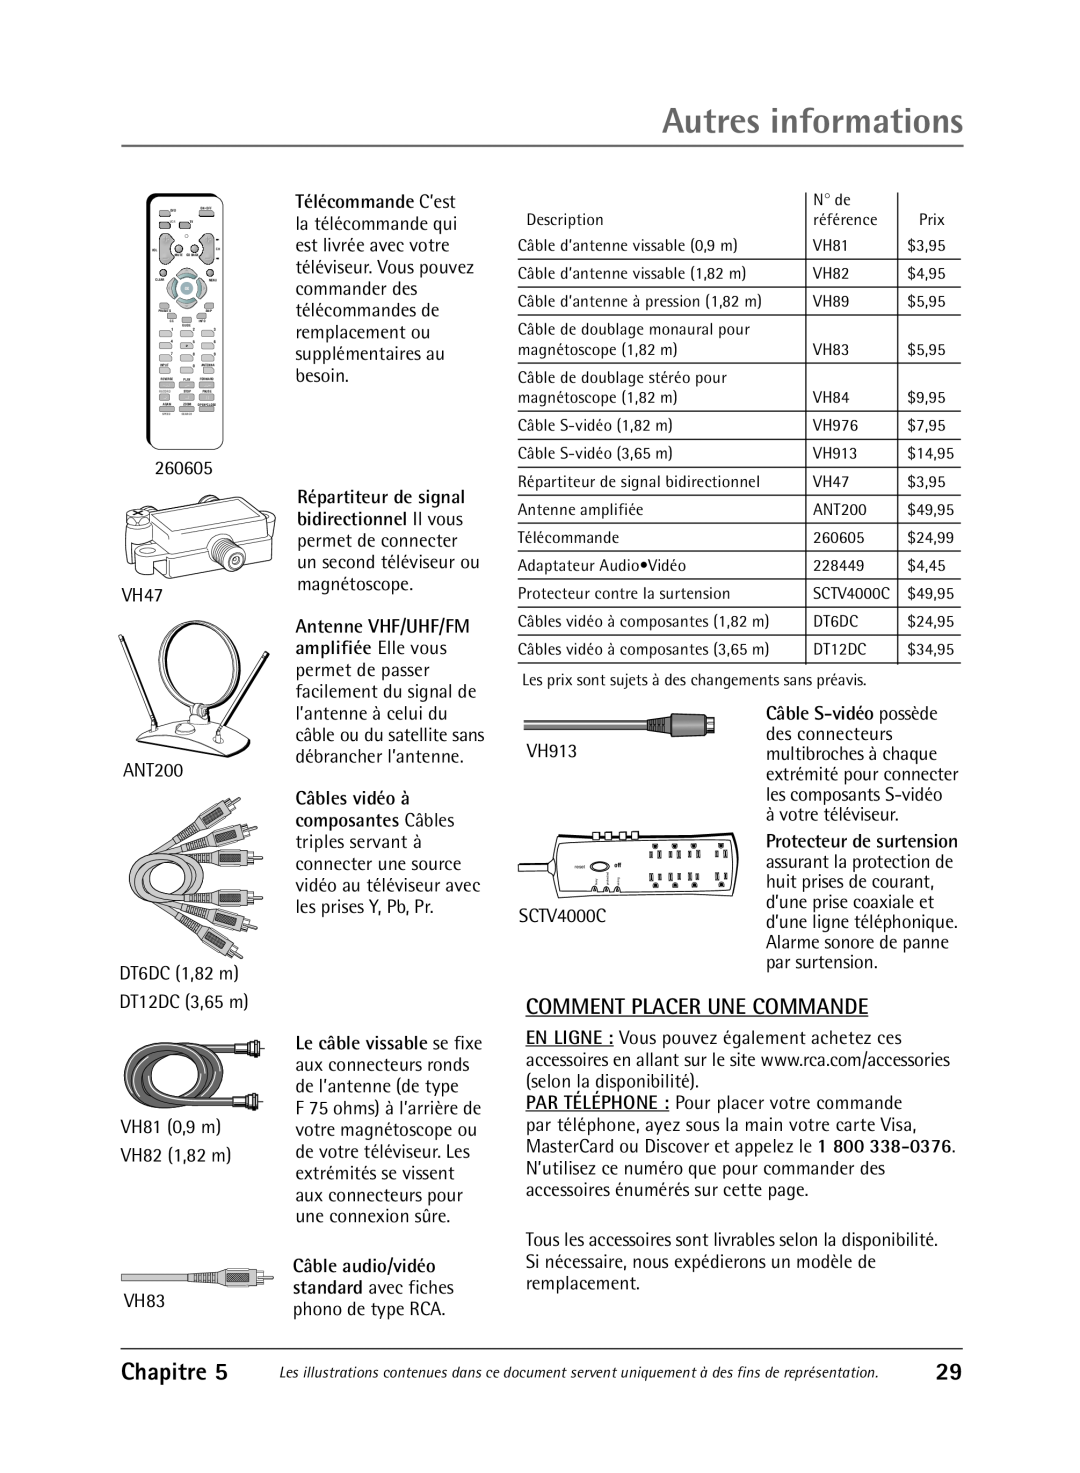 RCA 36V430T manual Comment Placer Une Commande, Autres informations, Chapitre 